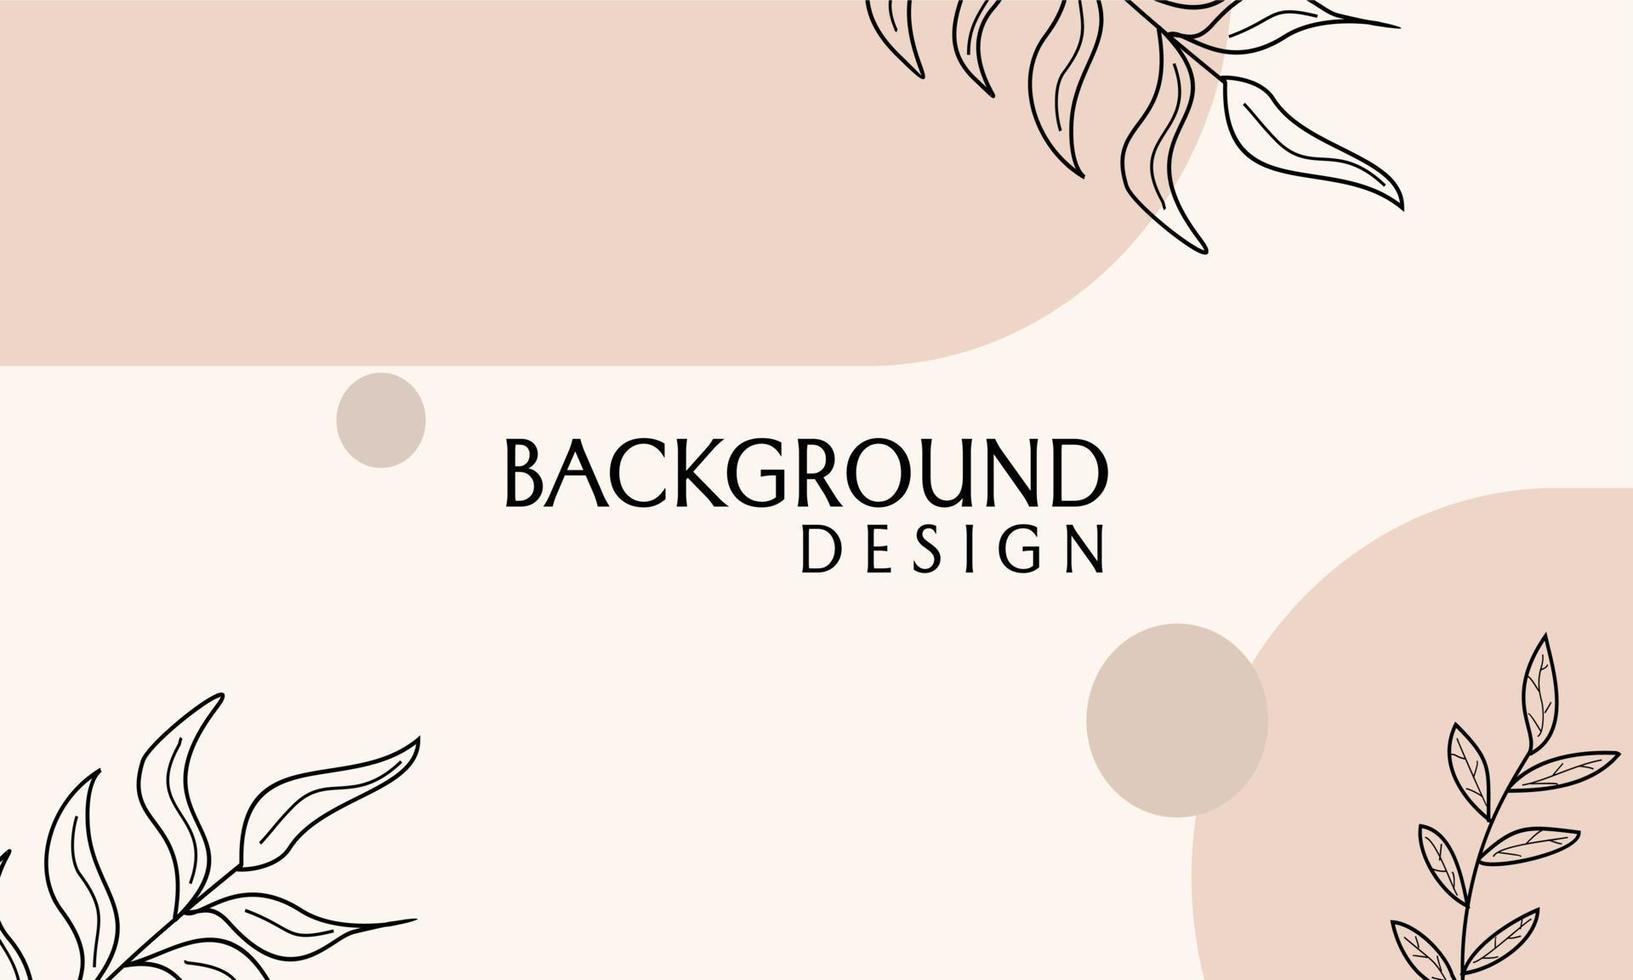 bruine kleur banner vector design met handgetekende elementen. vrouwelijk en minimalistisch design.